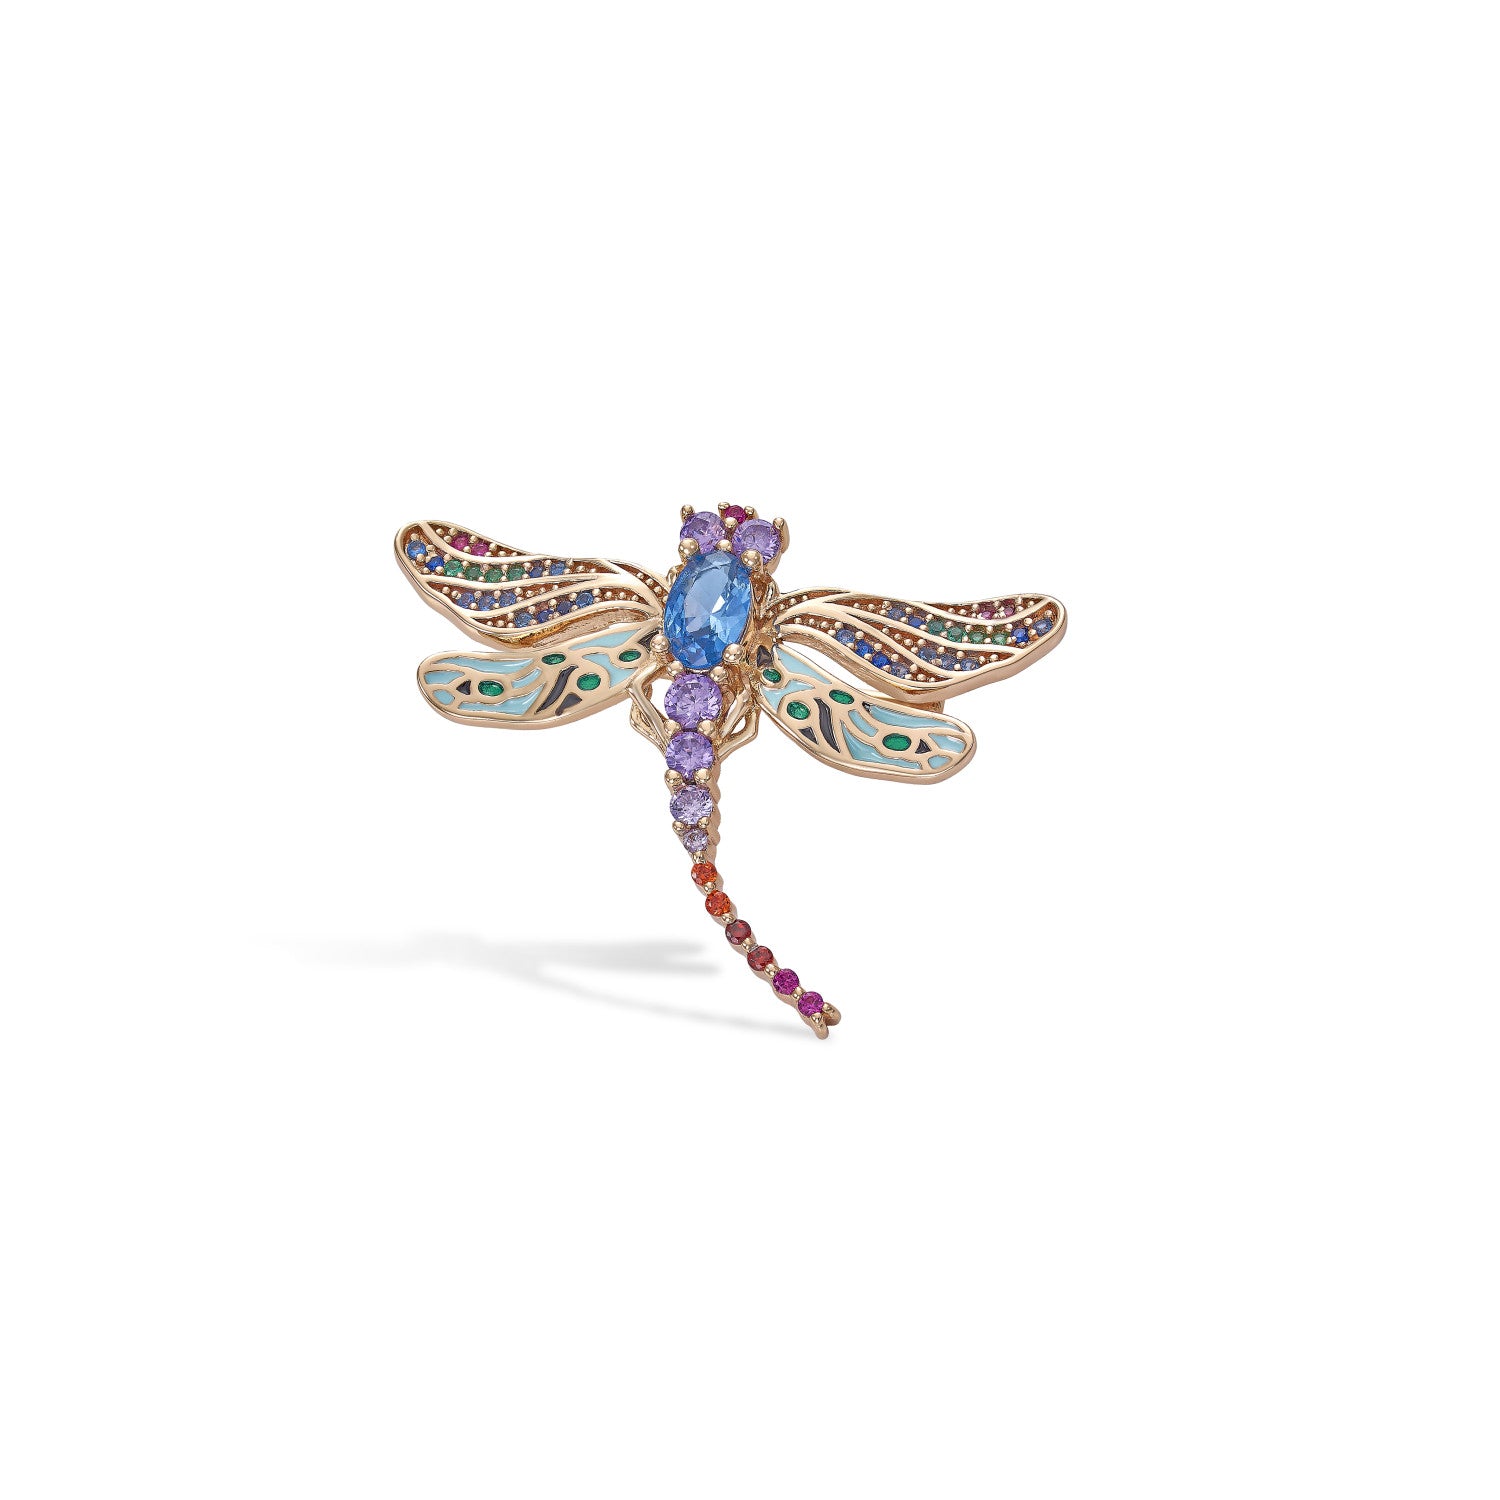 Broche de plata diseño insecto en tonalidades azules y violetas